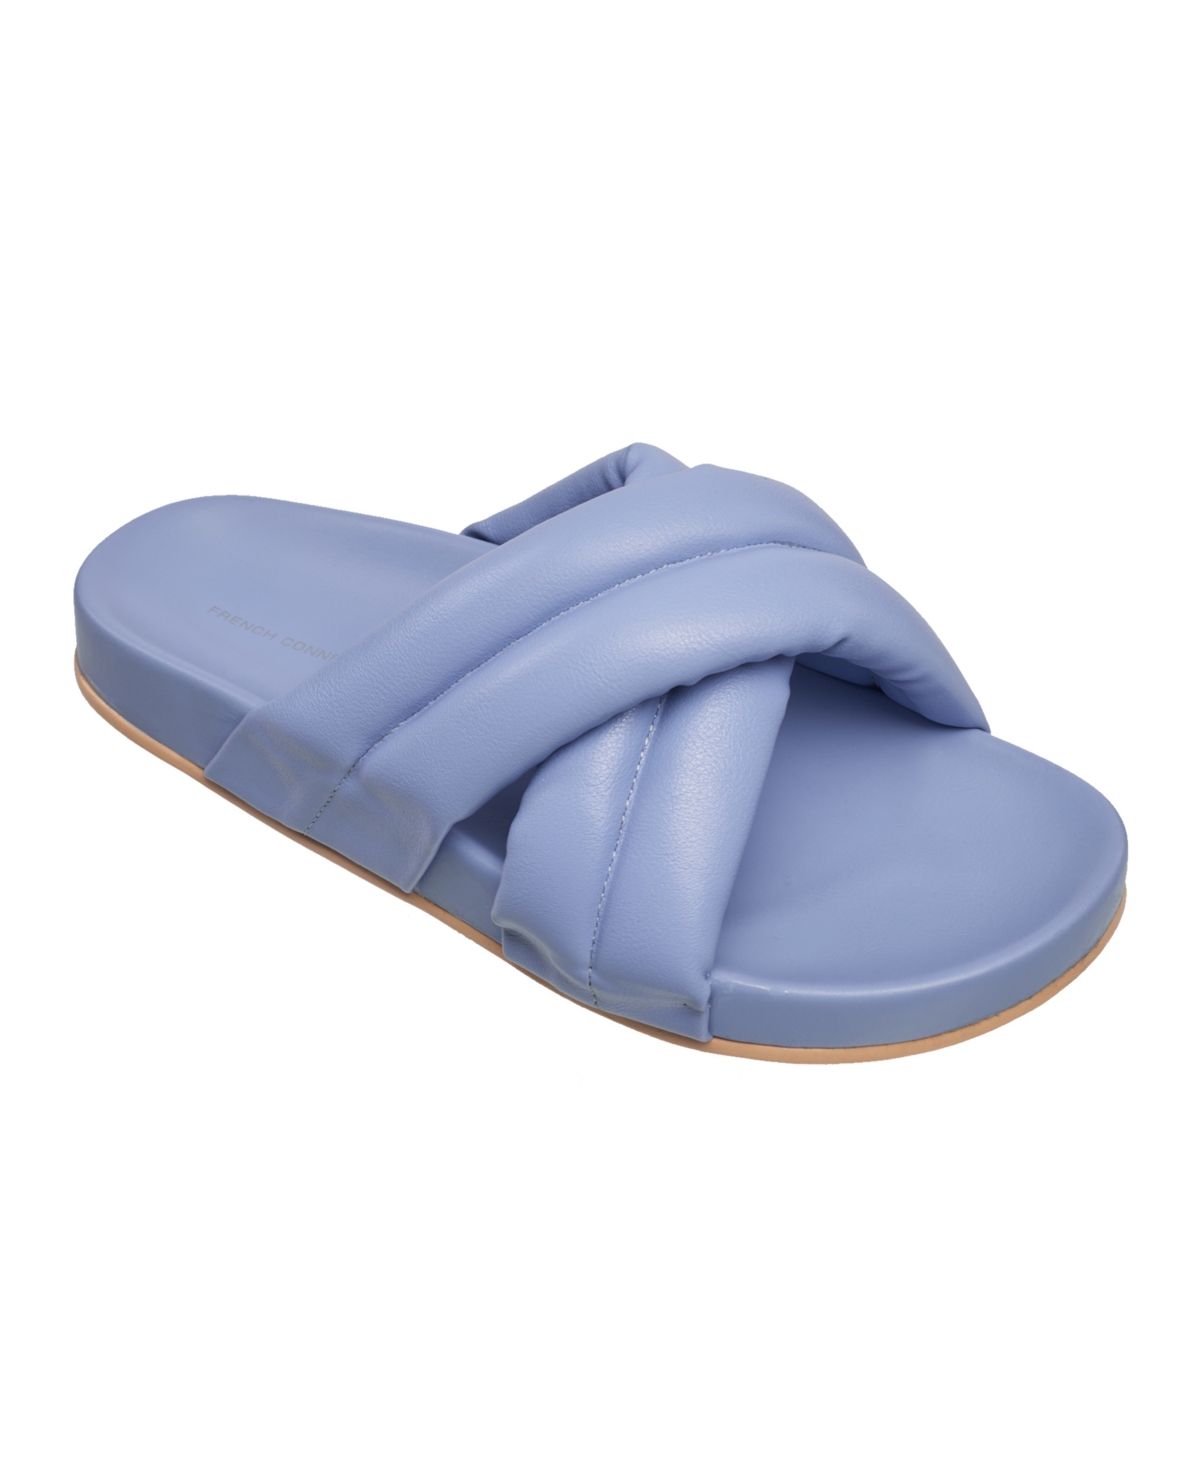 Women's Hayden Criss-Cross Flip Flop Slide Sandals - Light Blue